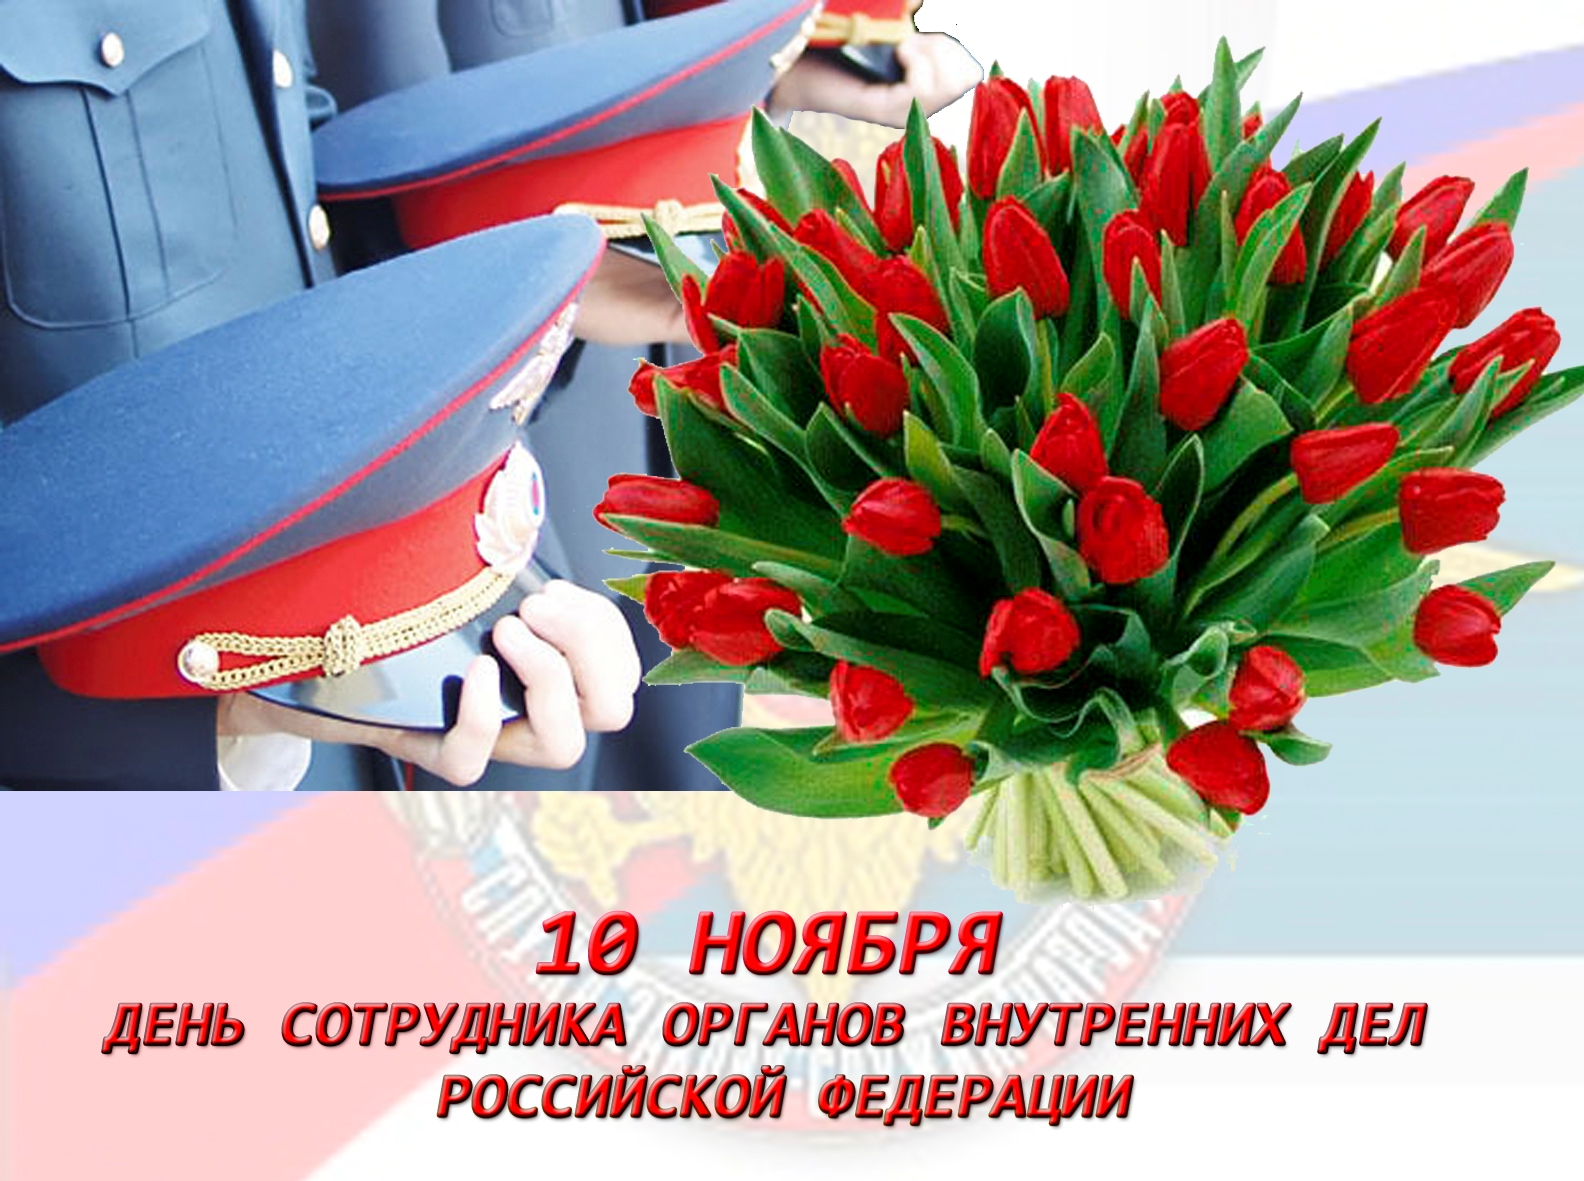 Открытки на День полиции или сотрудника ОВД РФ